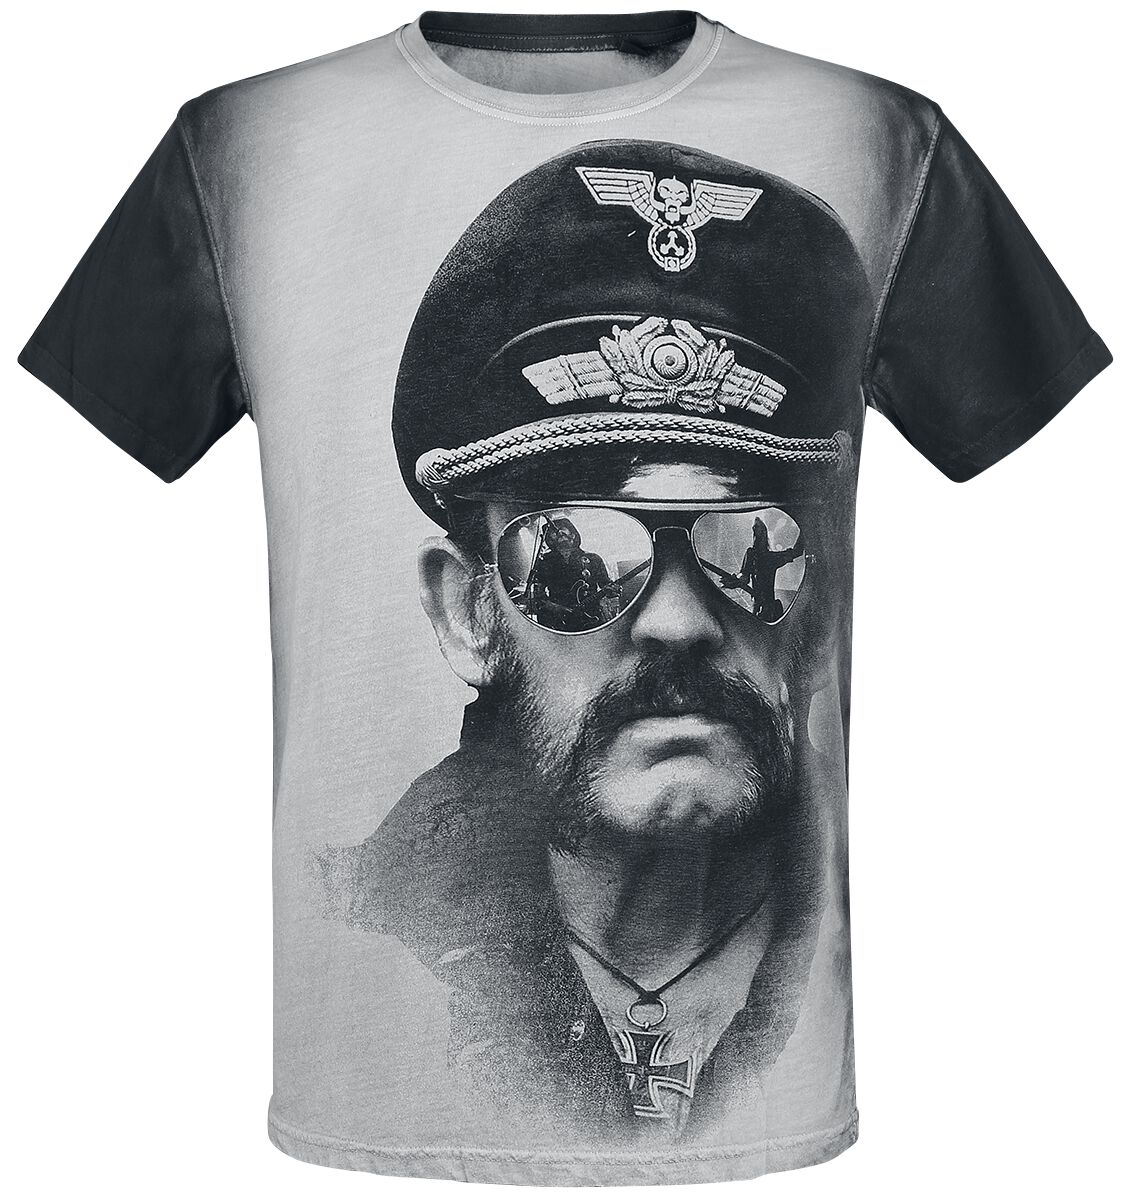 T-Shirt Manches courtes de Lemmy - Kilmister Side - S à M - pour Homme - blanc cassé/gris